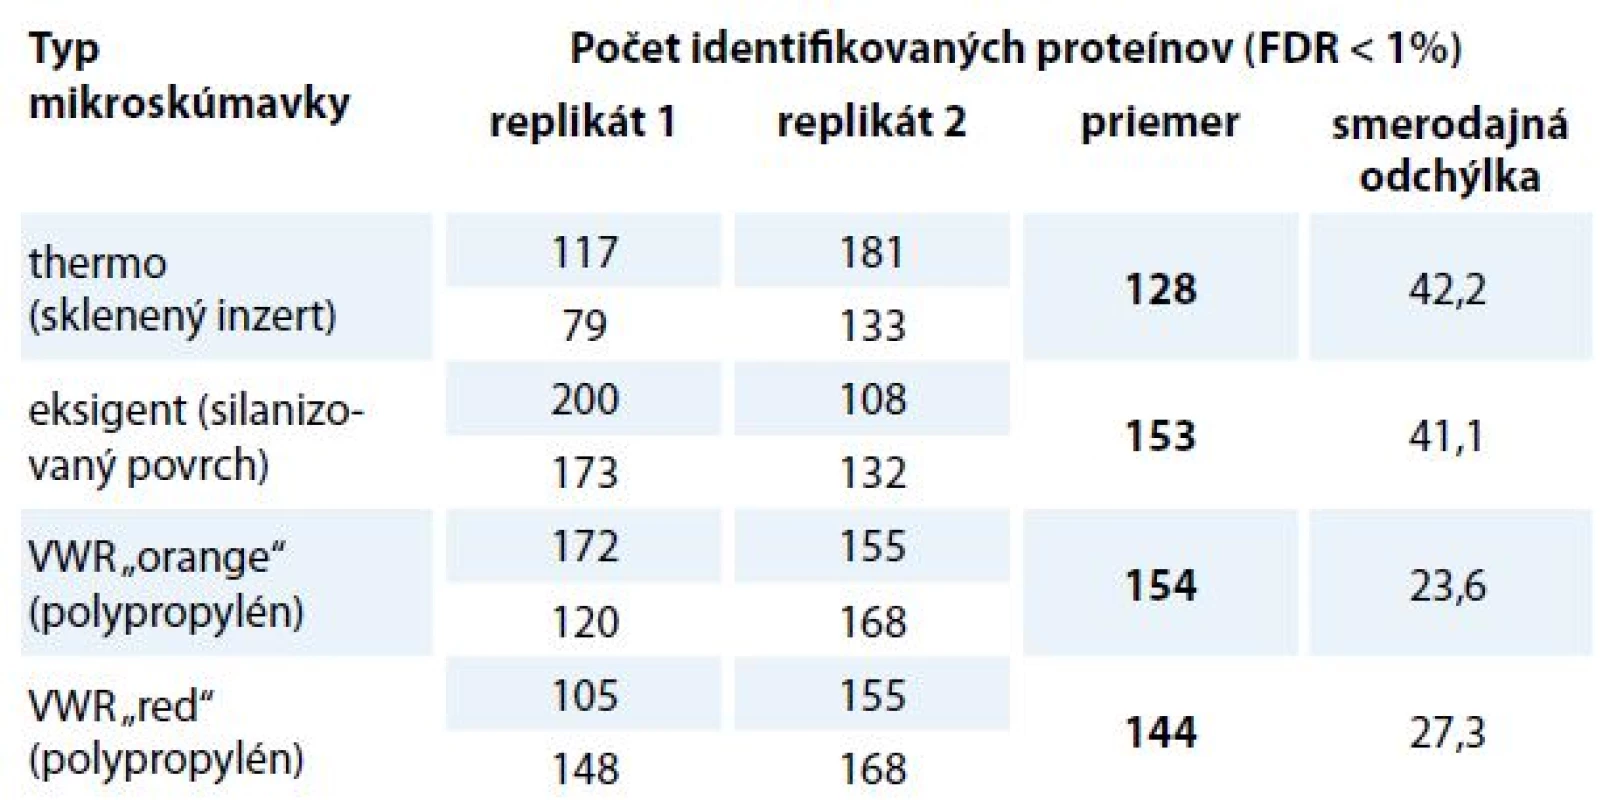 Počet identifikovaných proteínov v spektrálnej knižnici v závislosti na povrchu mikroskúmavky v autosampleri.
Napipetovaných bolo 0,05 μg peptidovej vzorky z MCF-7 do mikroskúmaviek v duplikáte a meranie bolo zopakované 2-krát. Pre každý typ mikroskúmavky bola určená smerodajná odchýlka a priemerný počet identifikovaných proteínov. Výsledky dokazujú, že počet identifikácií medzi porovnávanými mikroskúmavkami nie je podstatný. Mikroskúmavka so skleneným inzertom má vyššiu smerodajnú odchýlku a počet identifikovaných proteínov je nižší v porovnaní s ostatnými mikroskúmavkami.